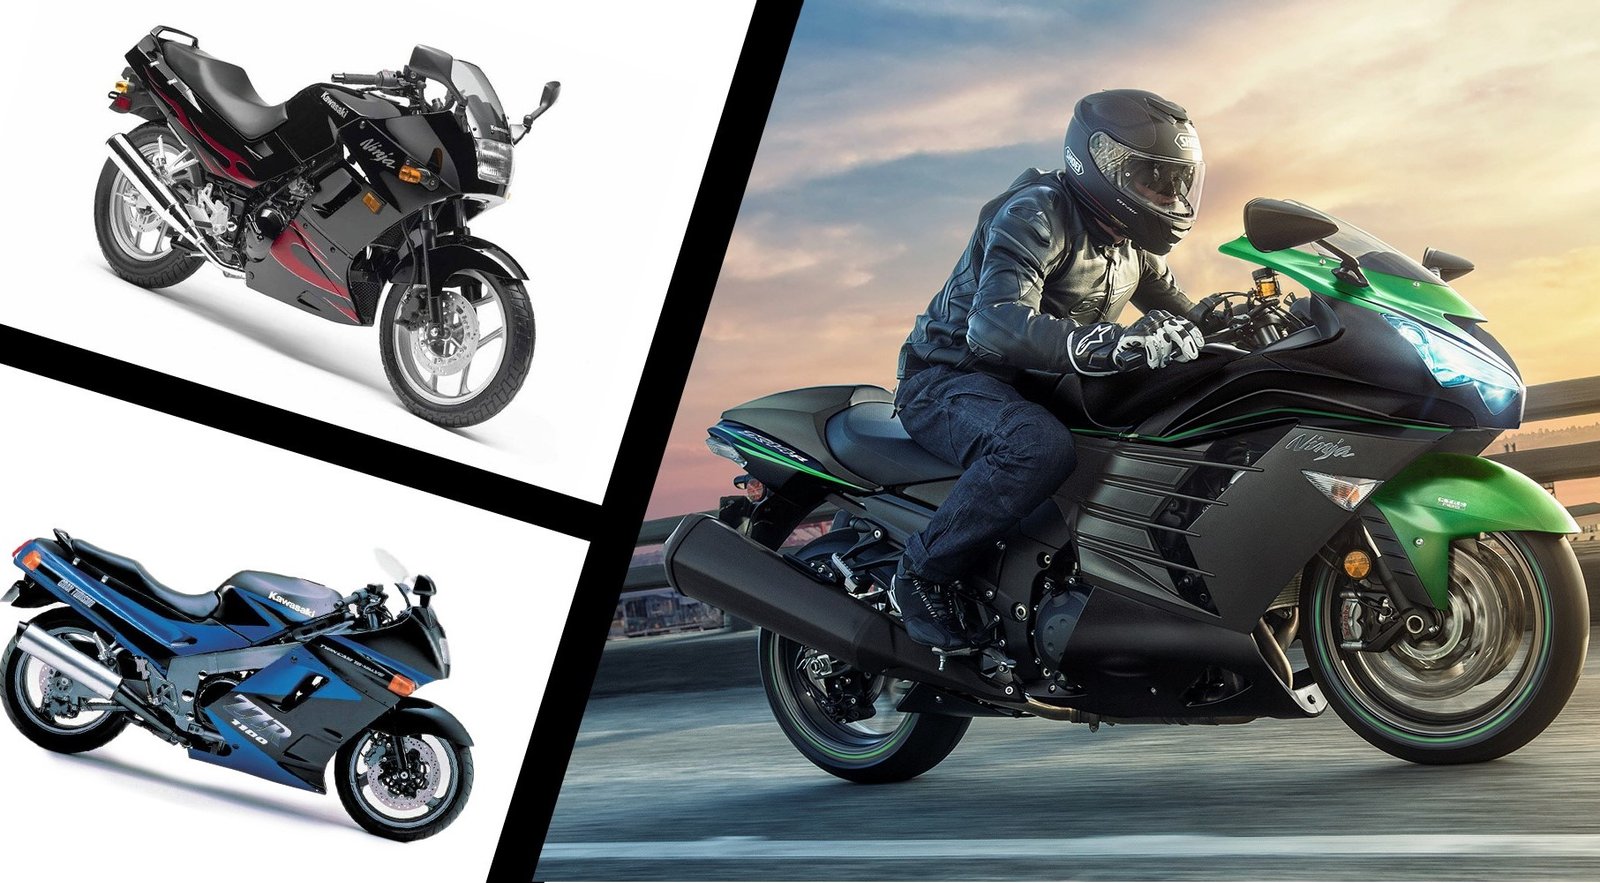 Kawasaki Motorcycles Marketing Mix